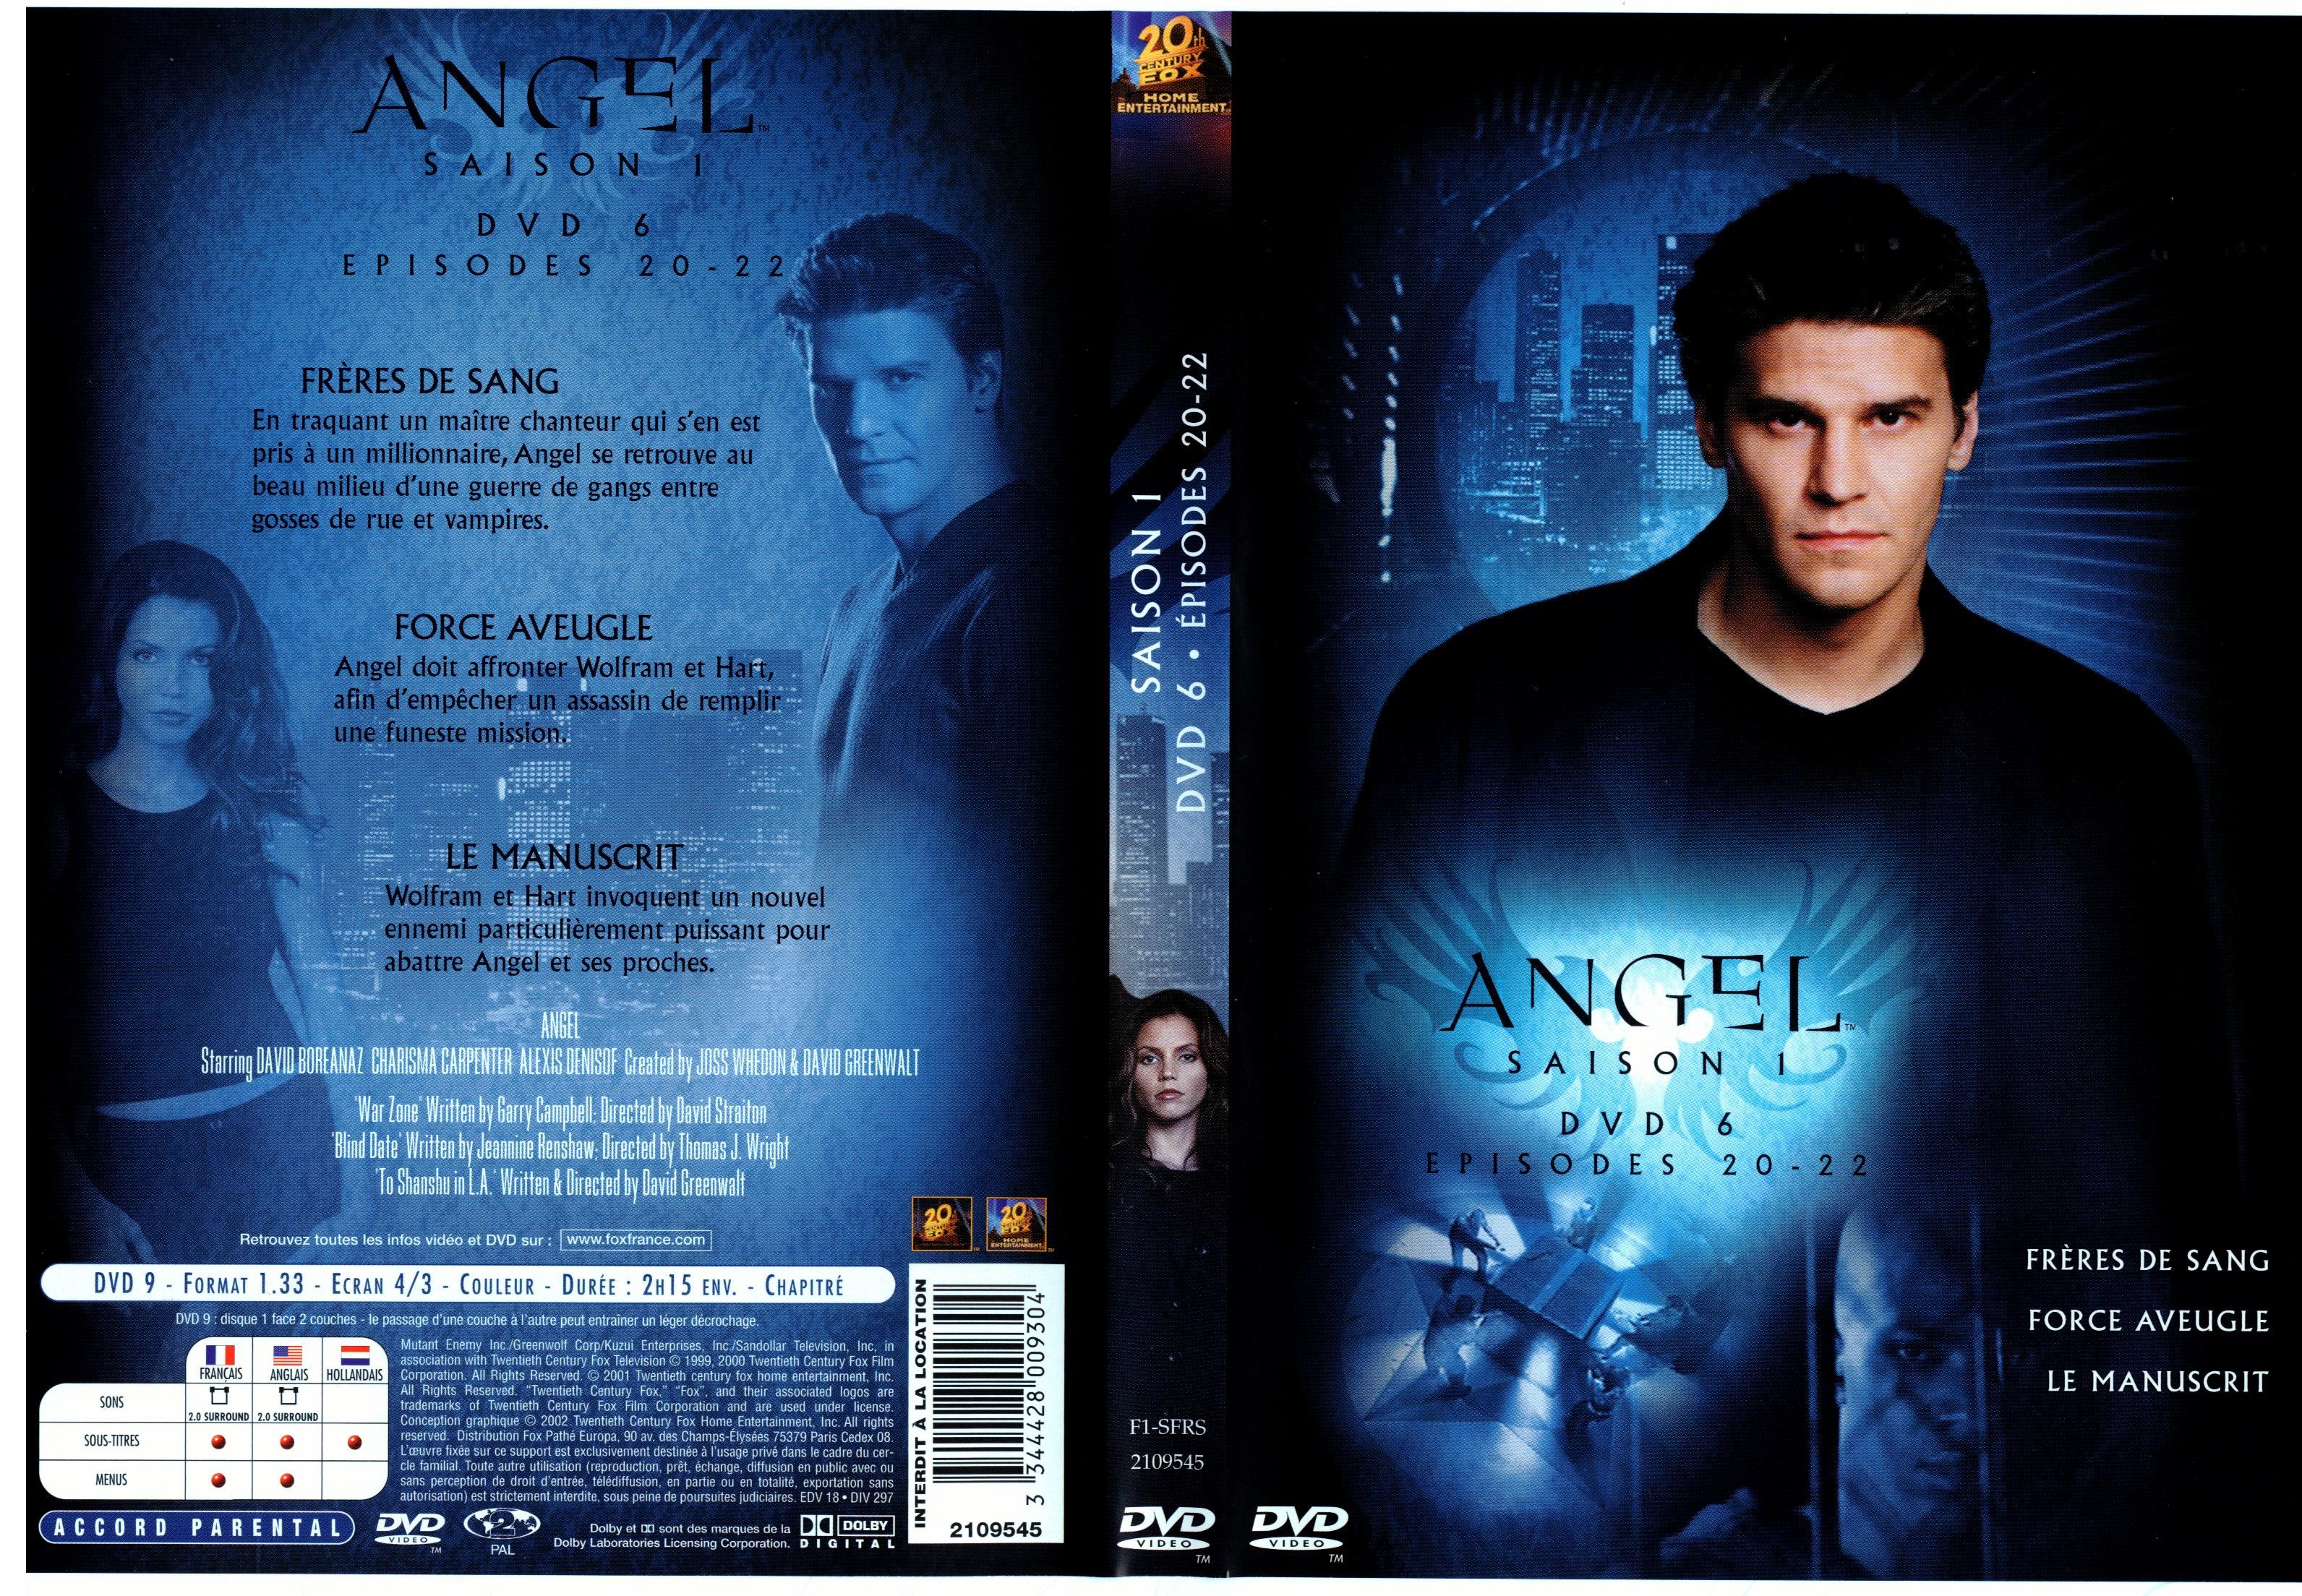 Jaquette DVD Angel Saison 1 dvd 6